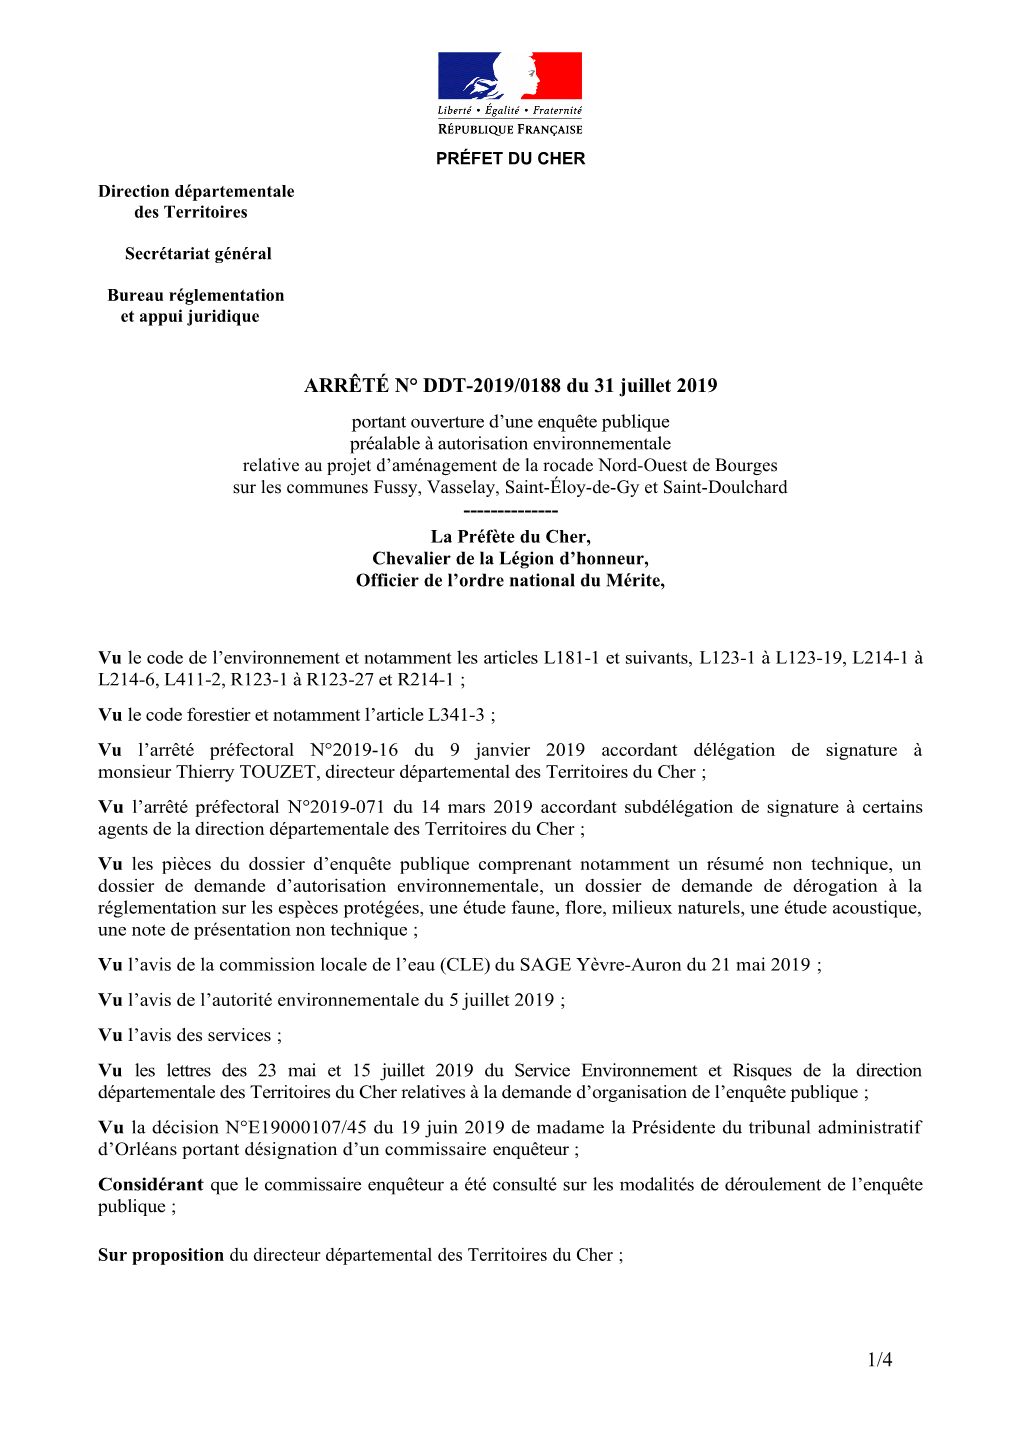 ARRÊTÉ N° DDT-2019/0188 Du 31 Juillet 2019